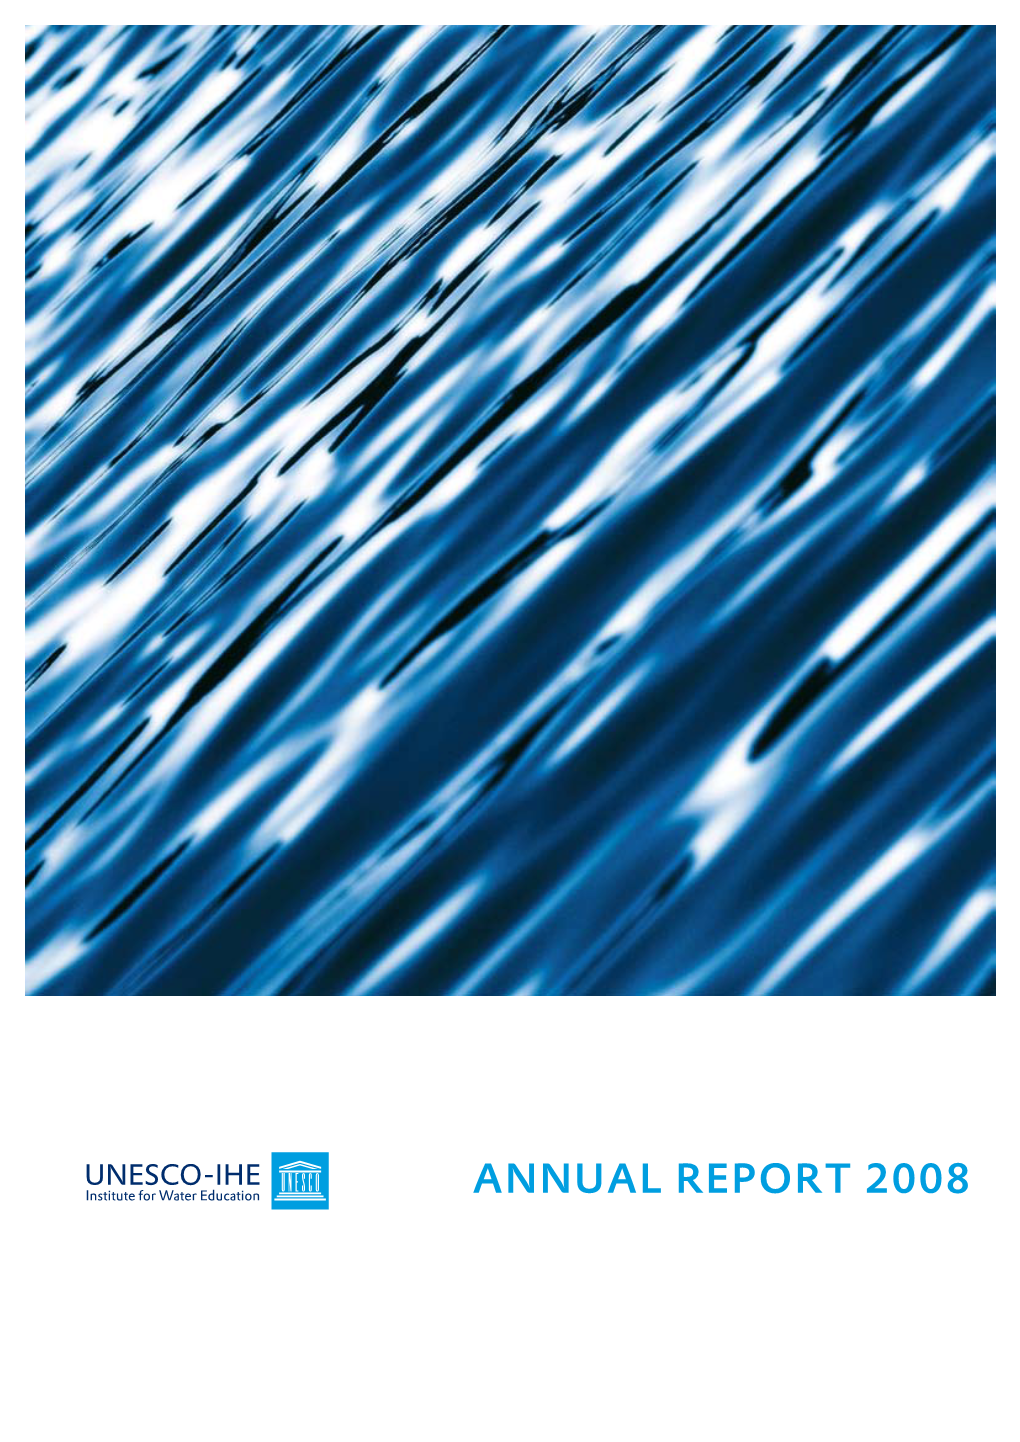 Annual Report 2008 the Institute Photos